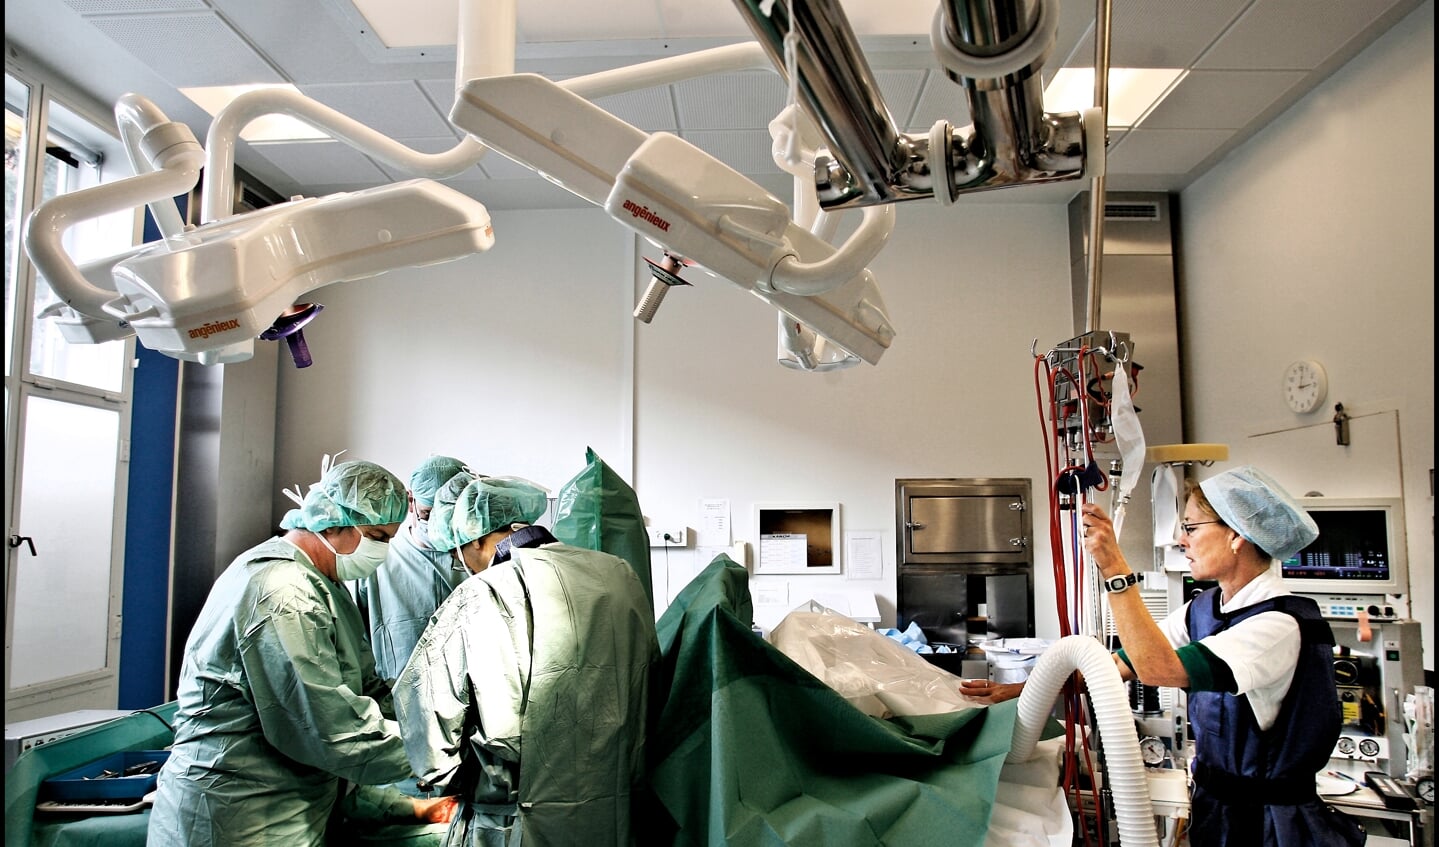 Der er stadig mange patienter, der venter på at blive opereret, efter at deres indgreb er blevet udsat på grund af corona. Arkivfoto: